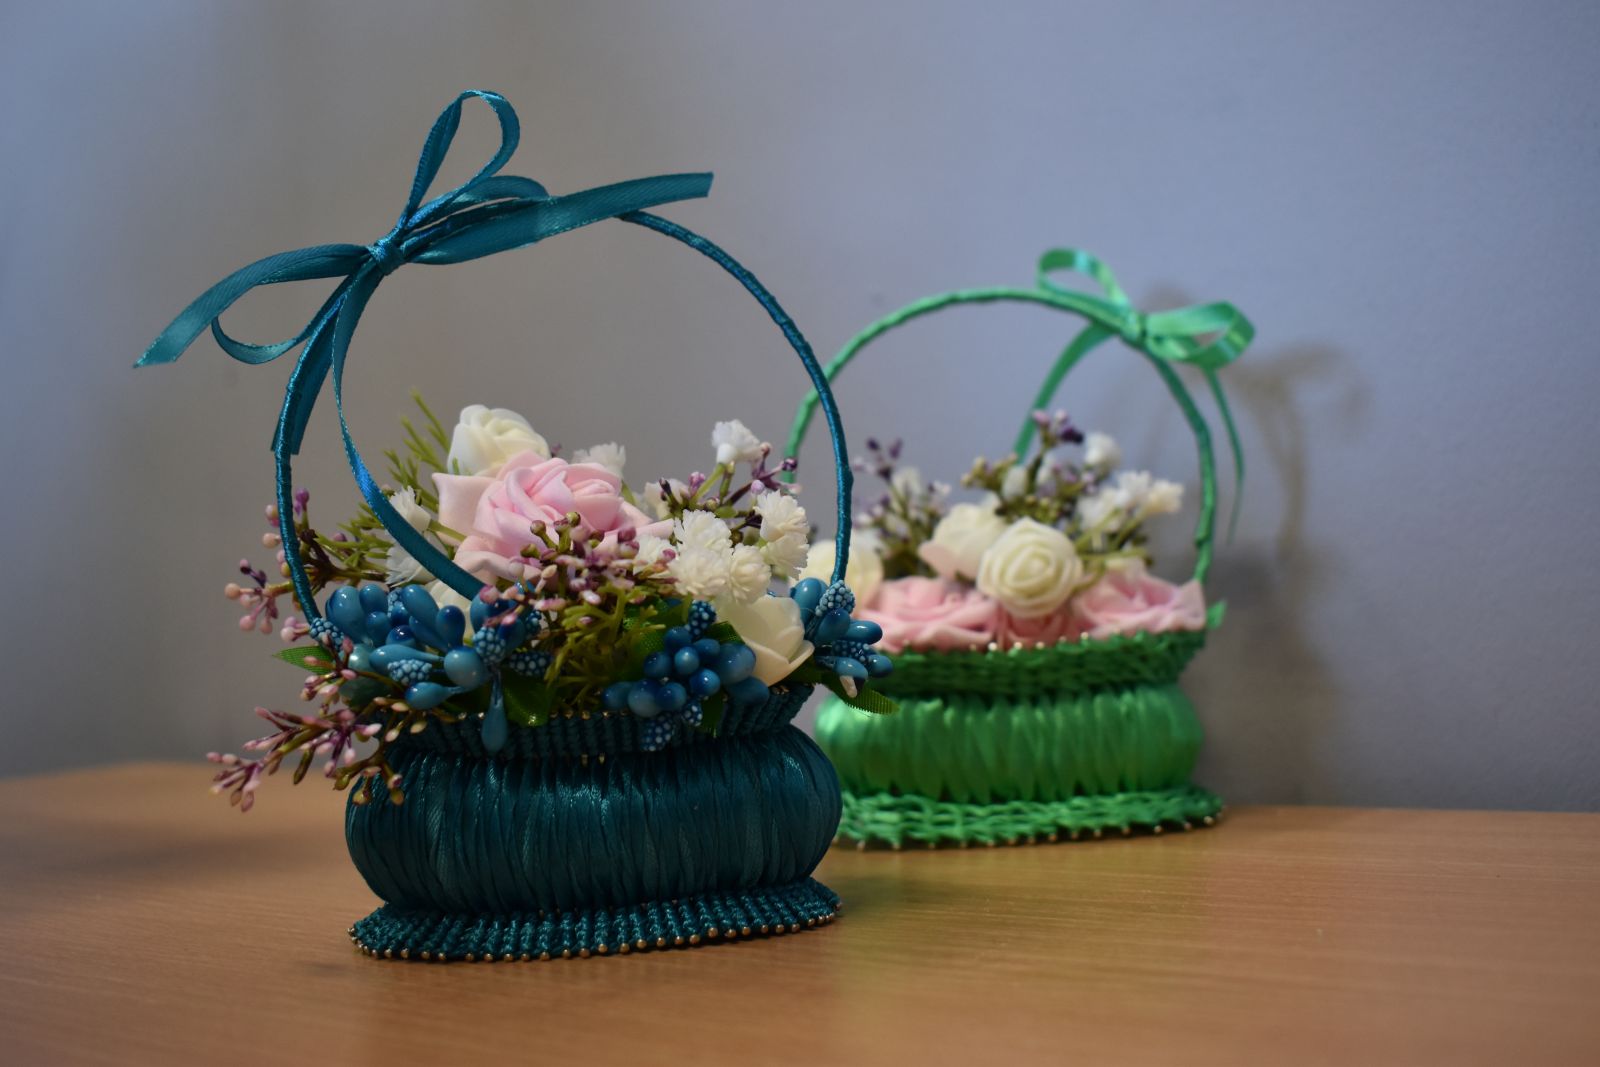 Niebieskie tło, na stoliku koszyczki wykonane z mydełka ozdobione wstążką i kwiatami